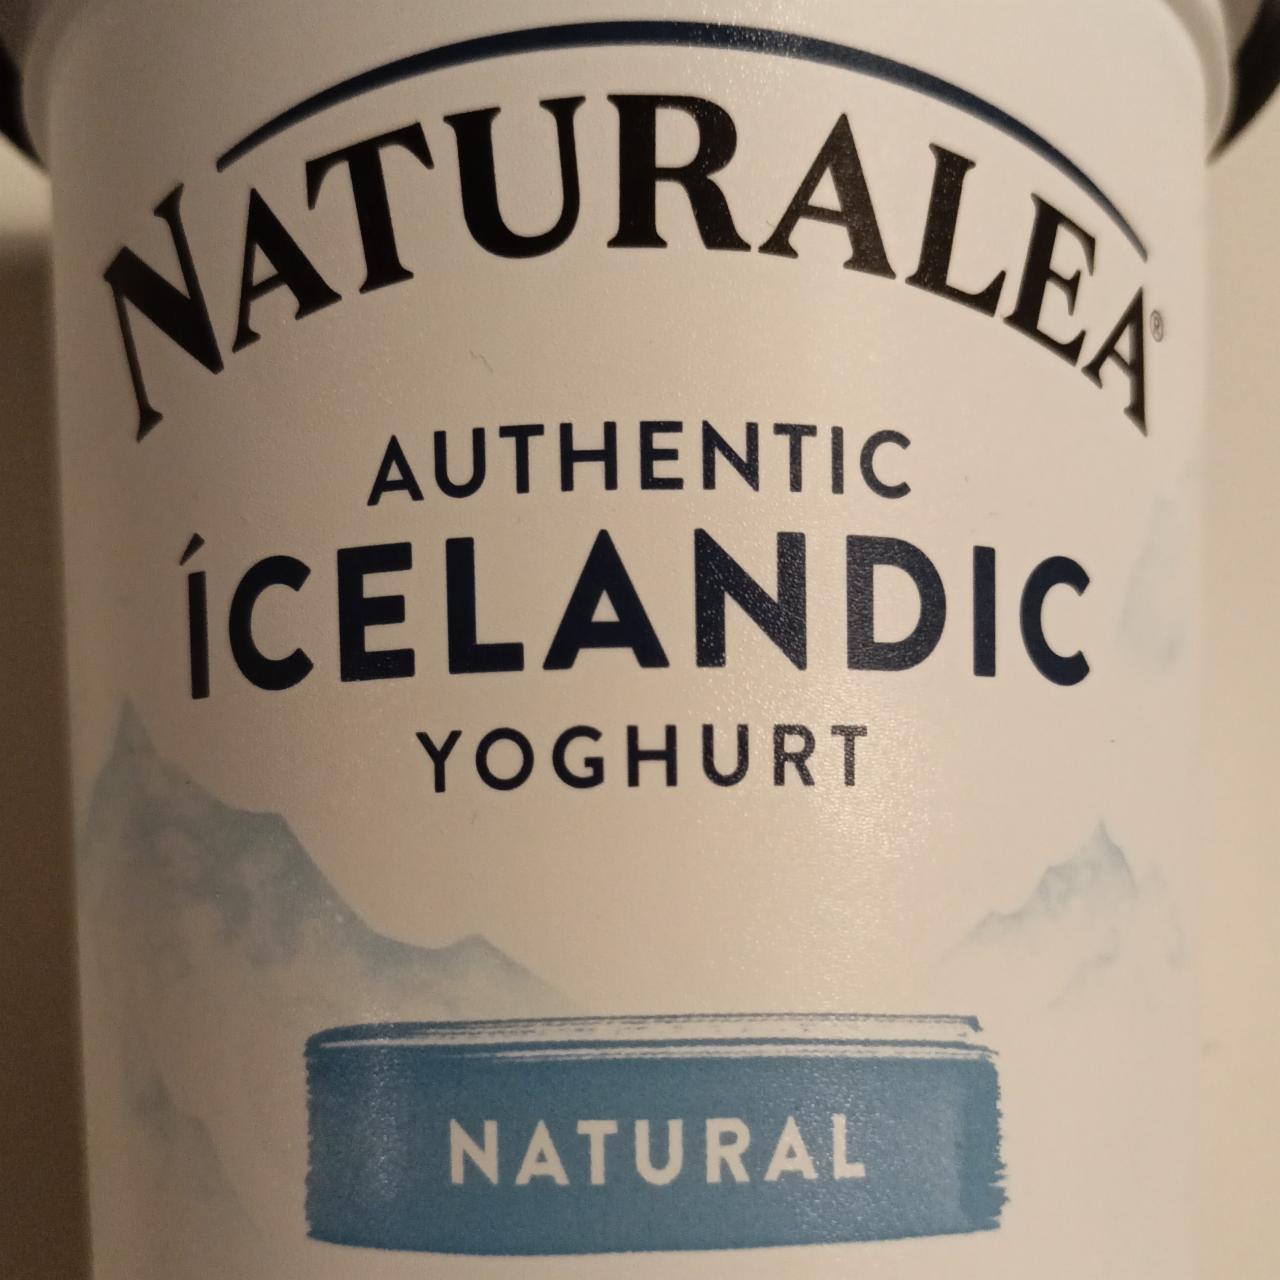 Fotografie - Authentic Icelandic yoghurt Natural Naturalea